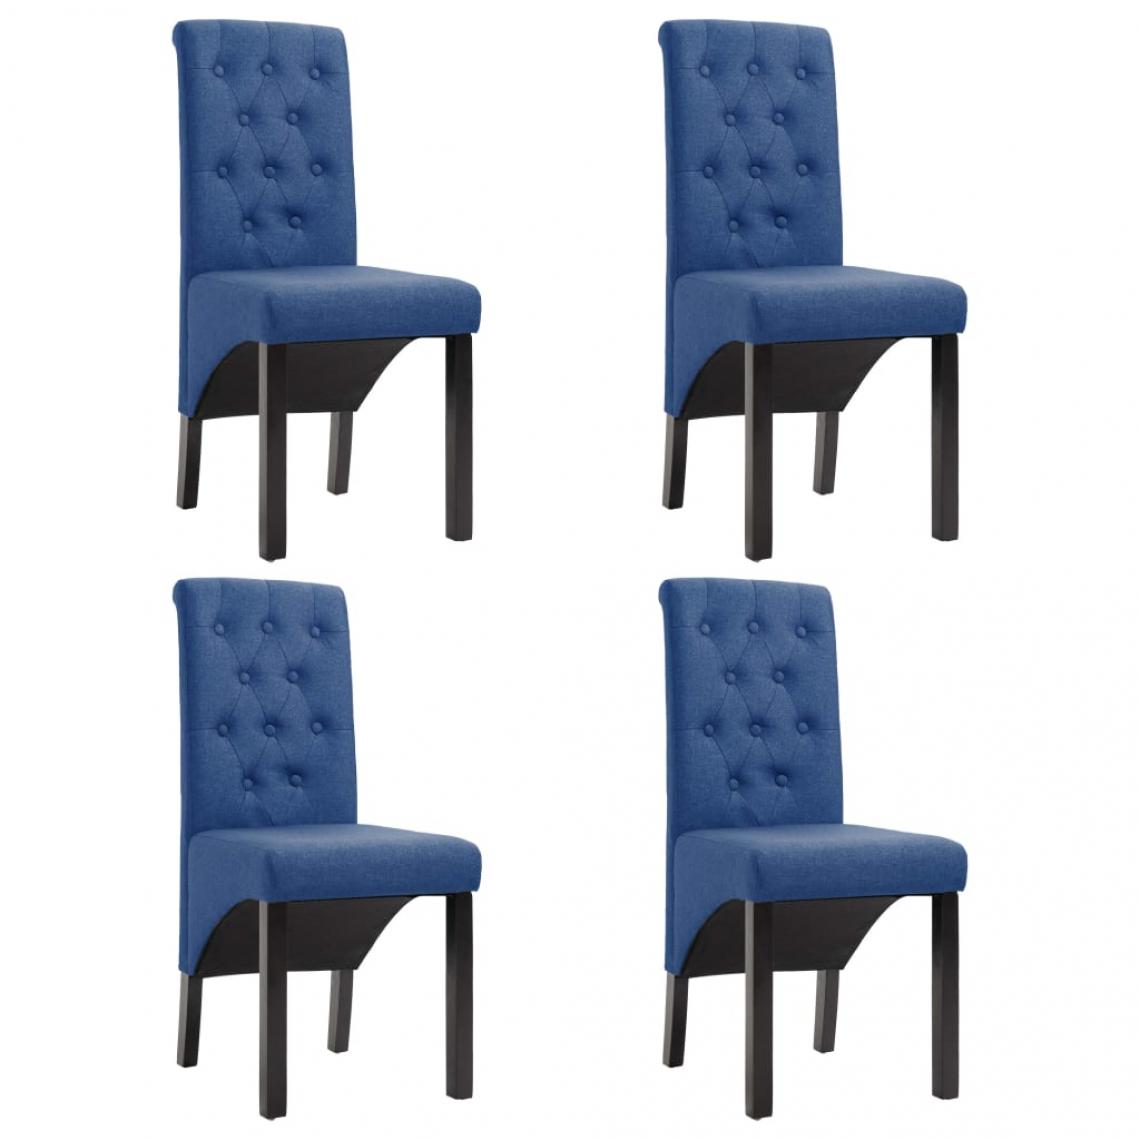 Decoshop26 - Lot de 4 chaises de salle à manger cuisine design classique tissu bleu CDS021296 - Chaises